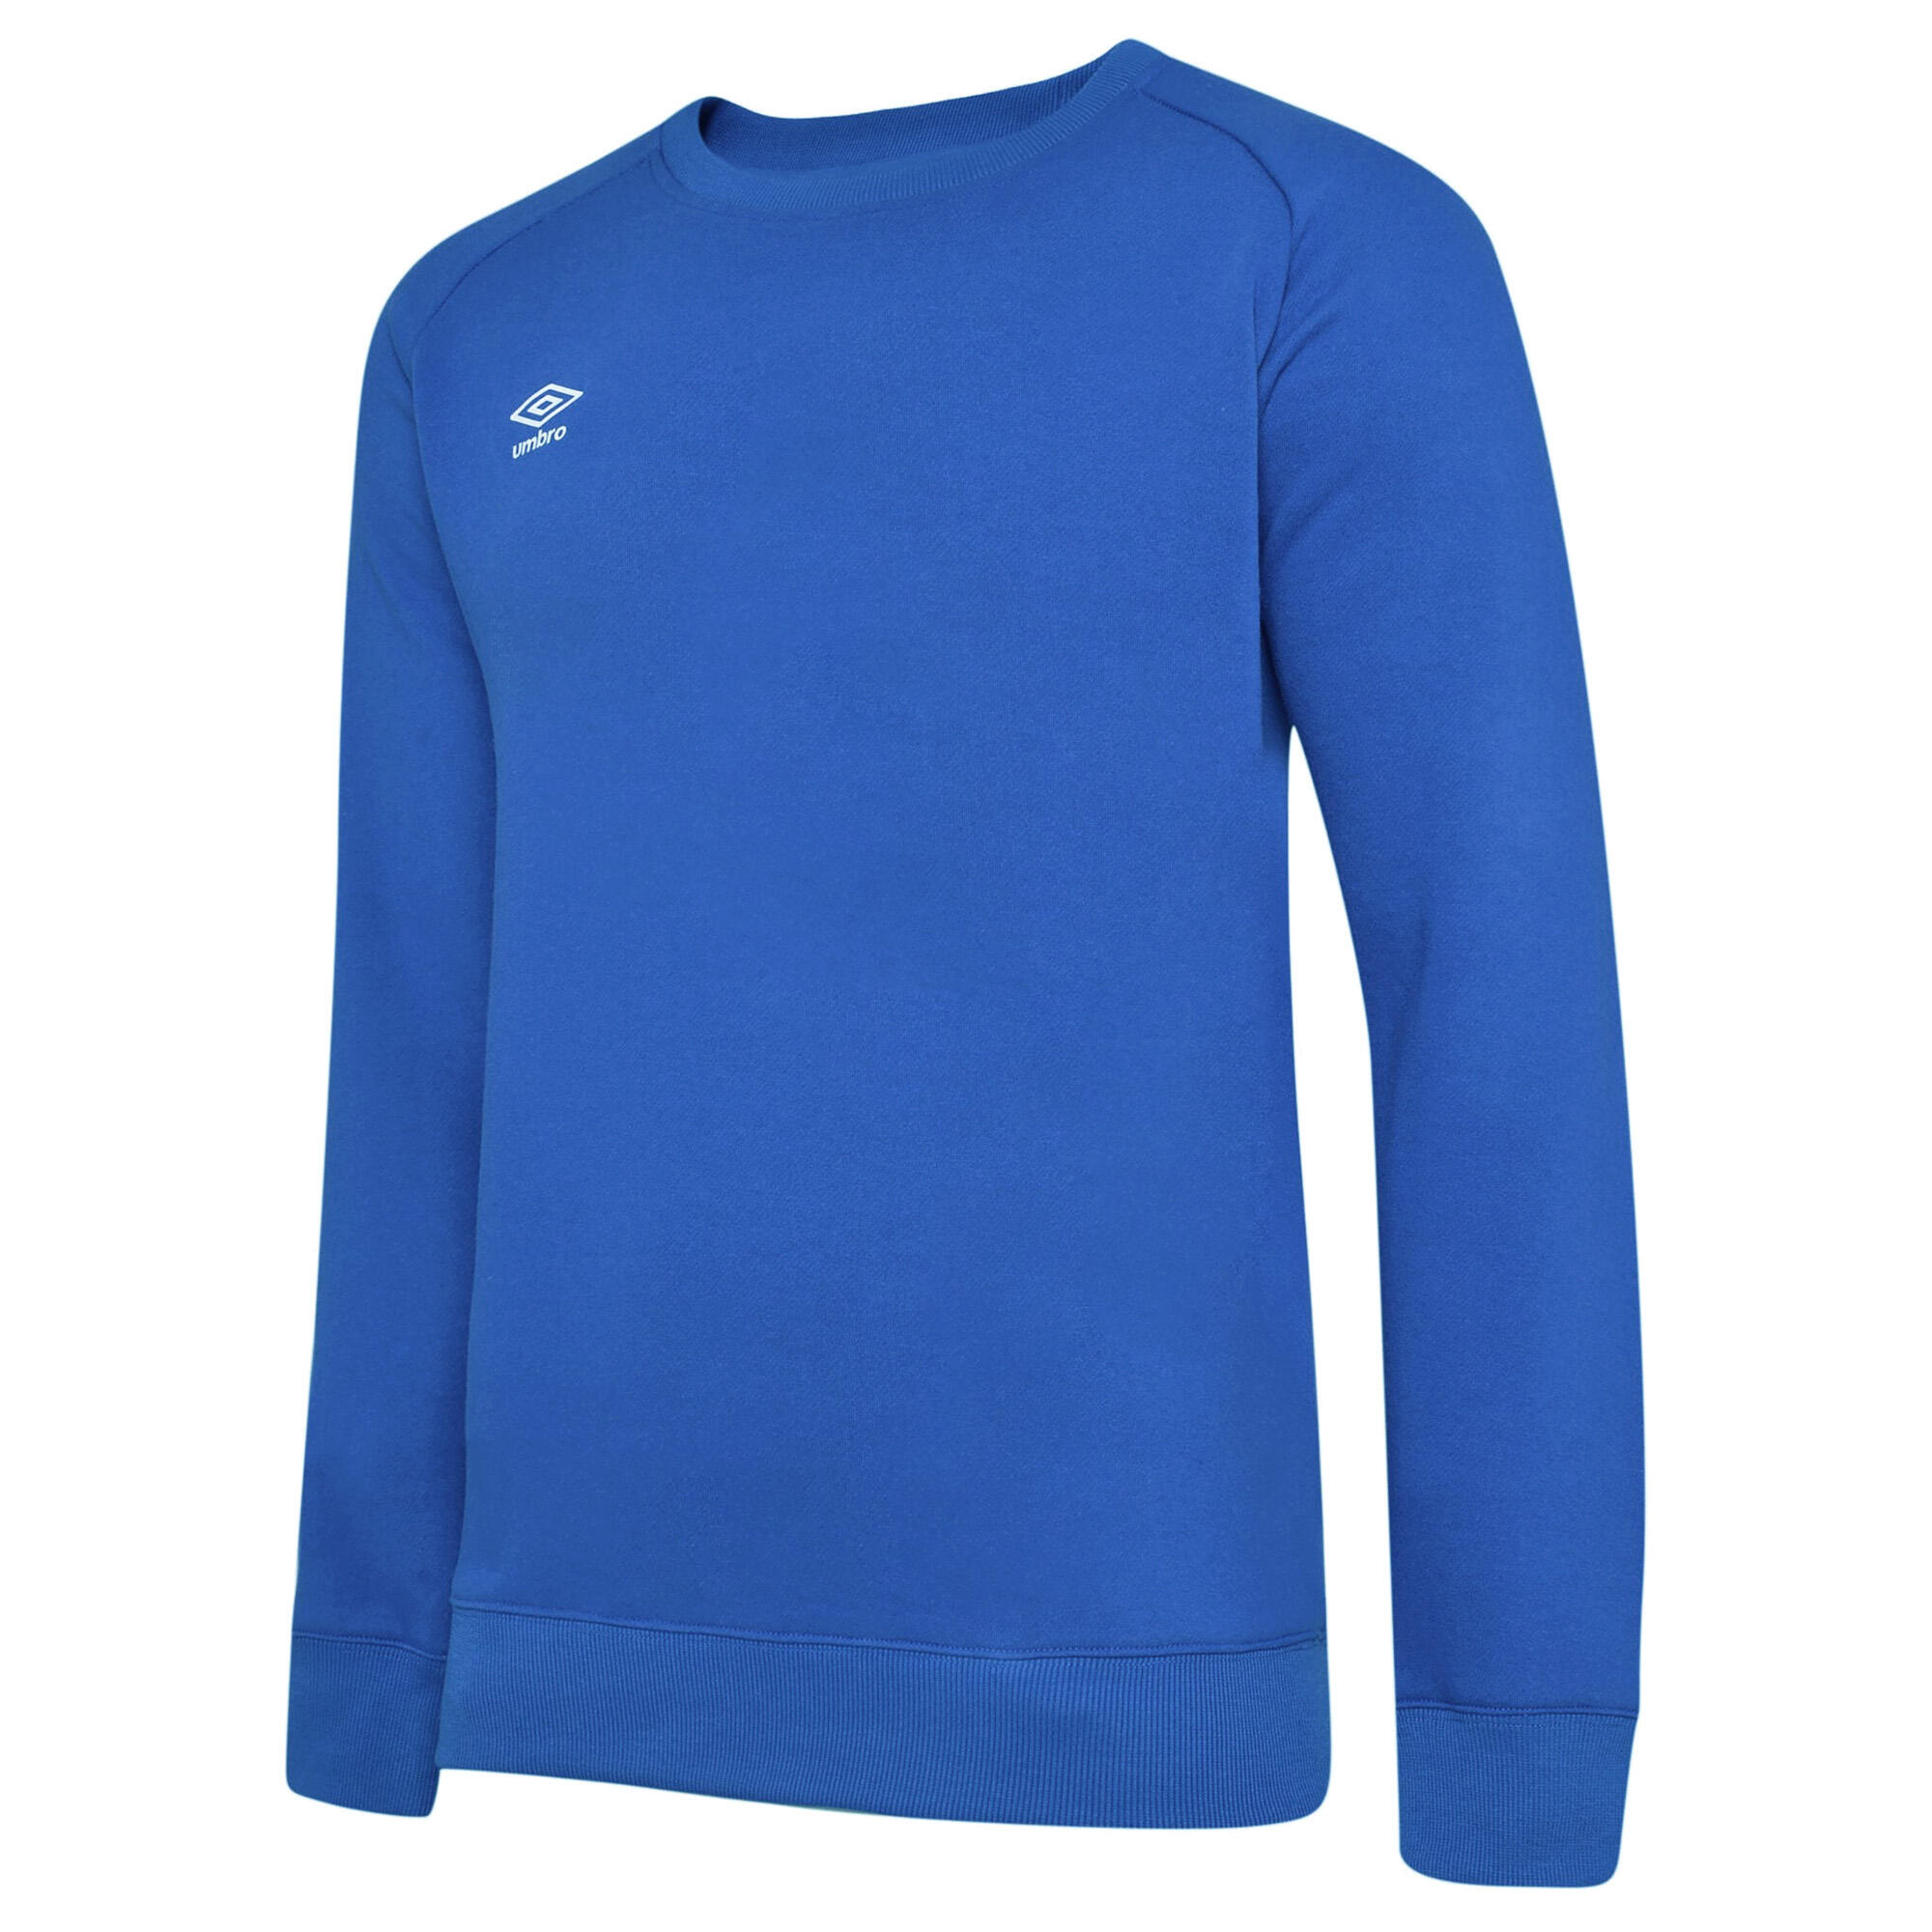 UMBRO Womens/Ladies Club Leisure Sweatshirt (Royal Blue/White)